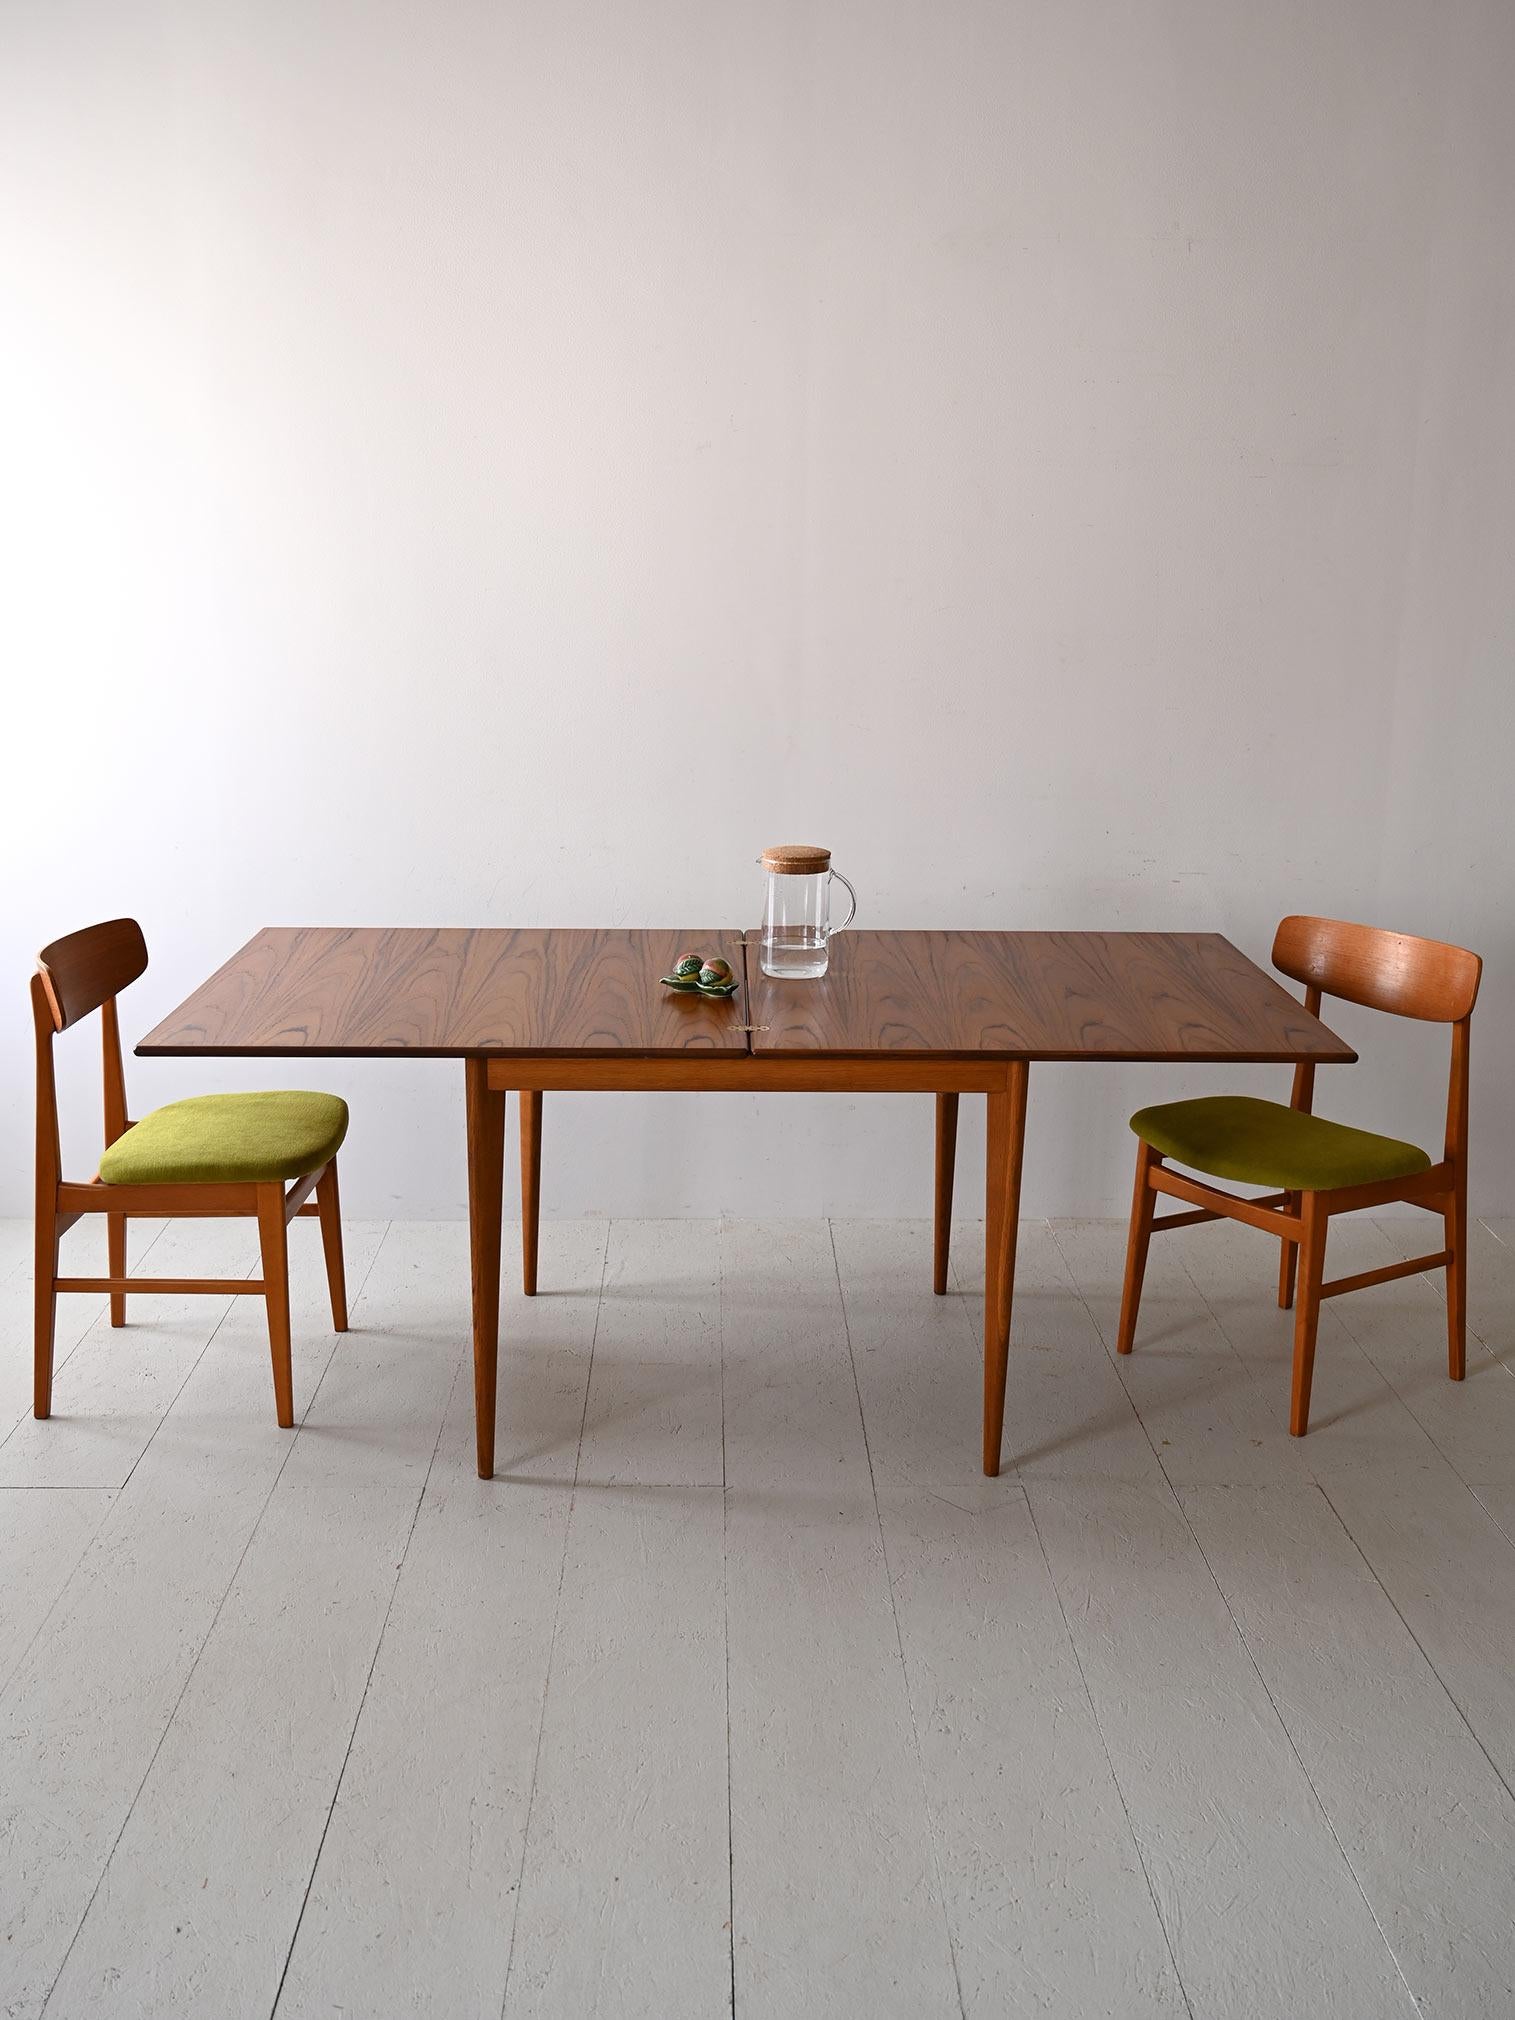 Questo tavolo estendibile in teak, tipico del design scandinavo degli anni '60, offre un equilibrio perfetto tra funzionalità e stile. Le gambe sottili e il bordo smussato del piano sottolineano la sua eleganza intrinseca, mentre la capacità di